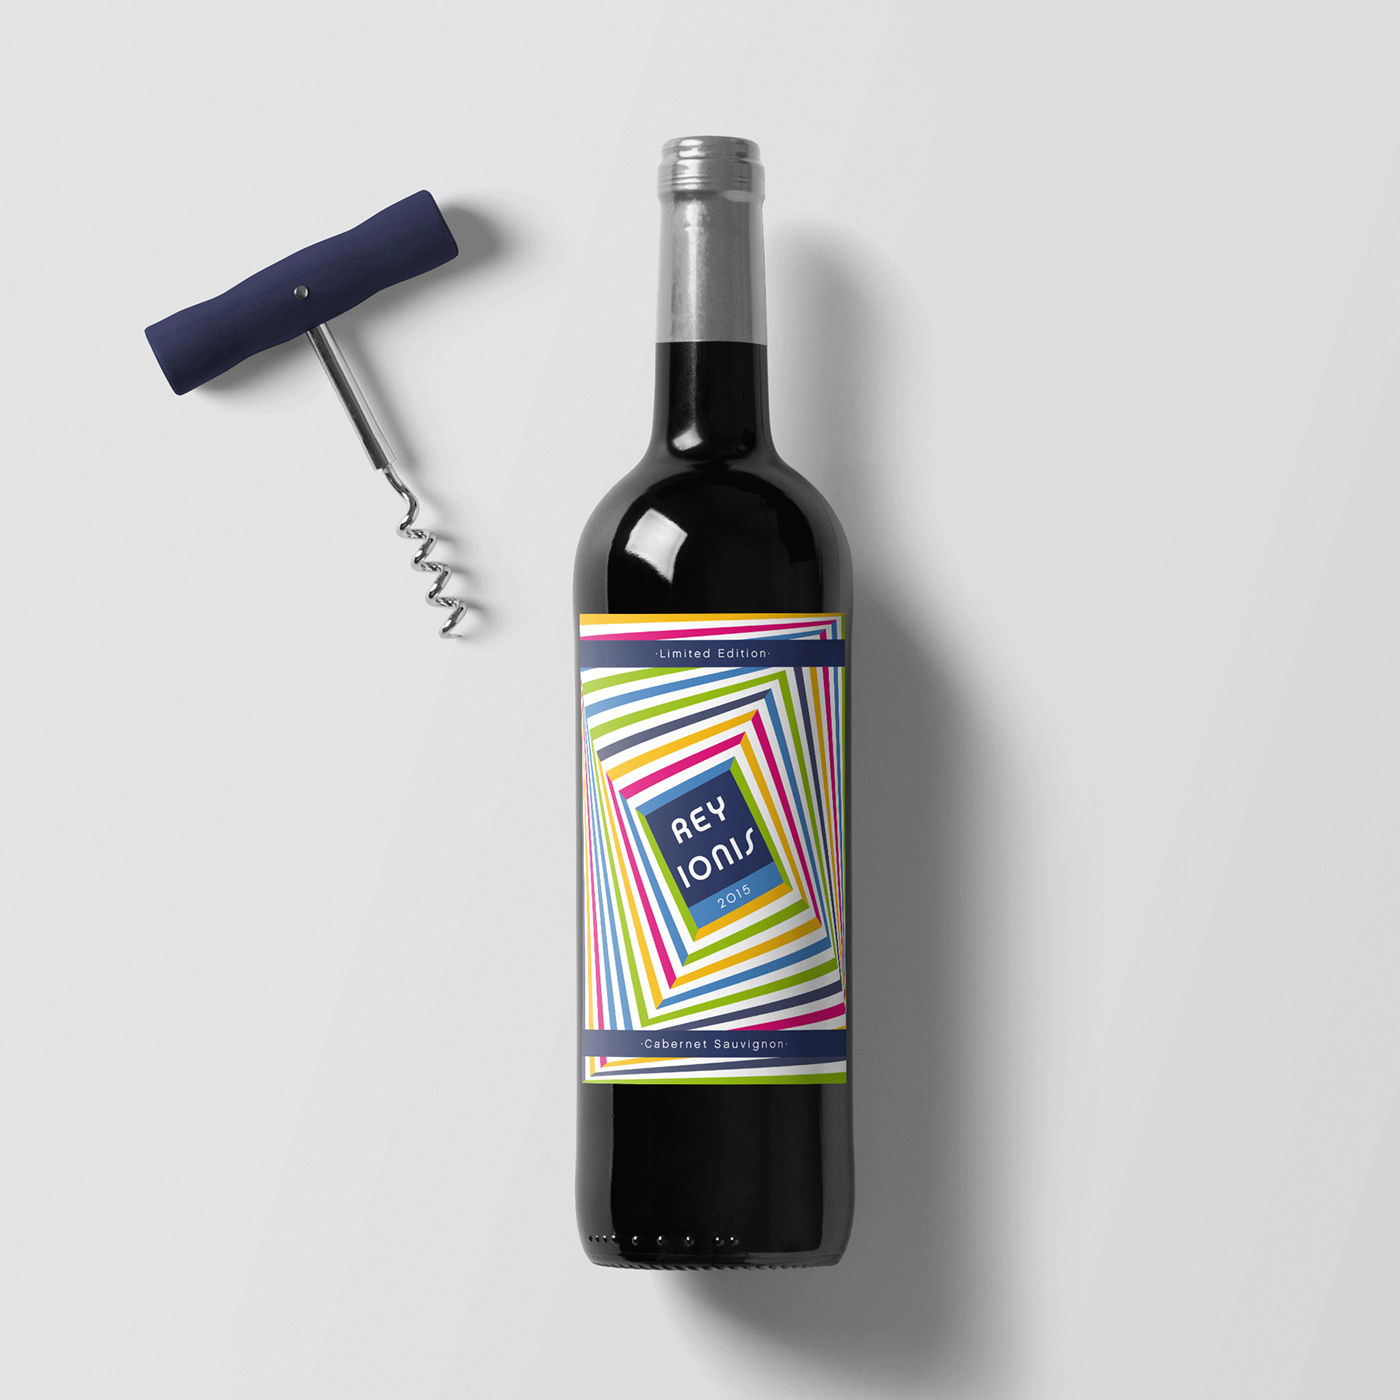 wine Label vino etiqueta grafico diseño bottle botella vineyard spain limited edition edición especial